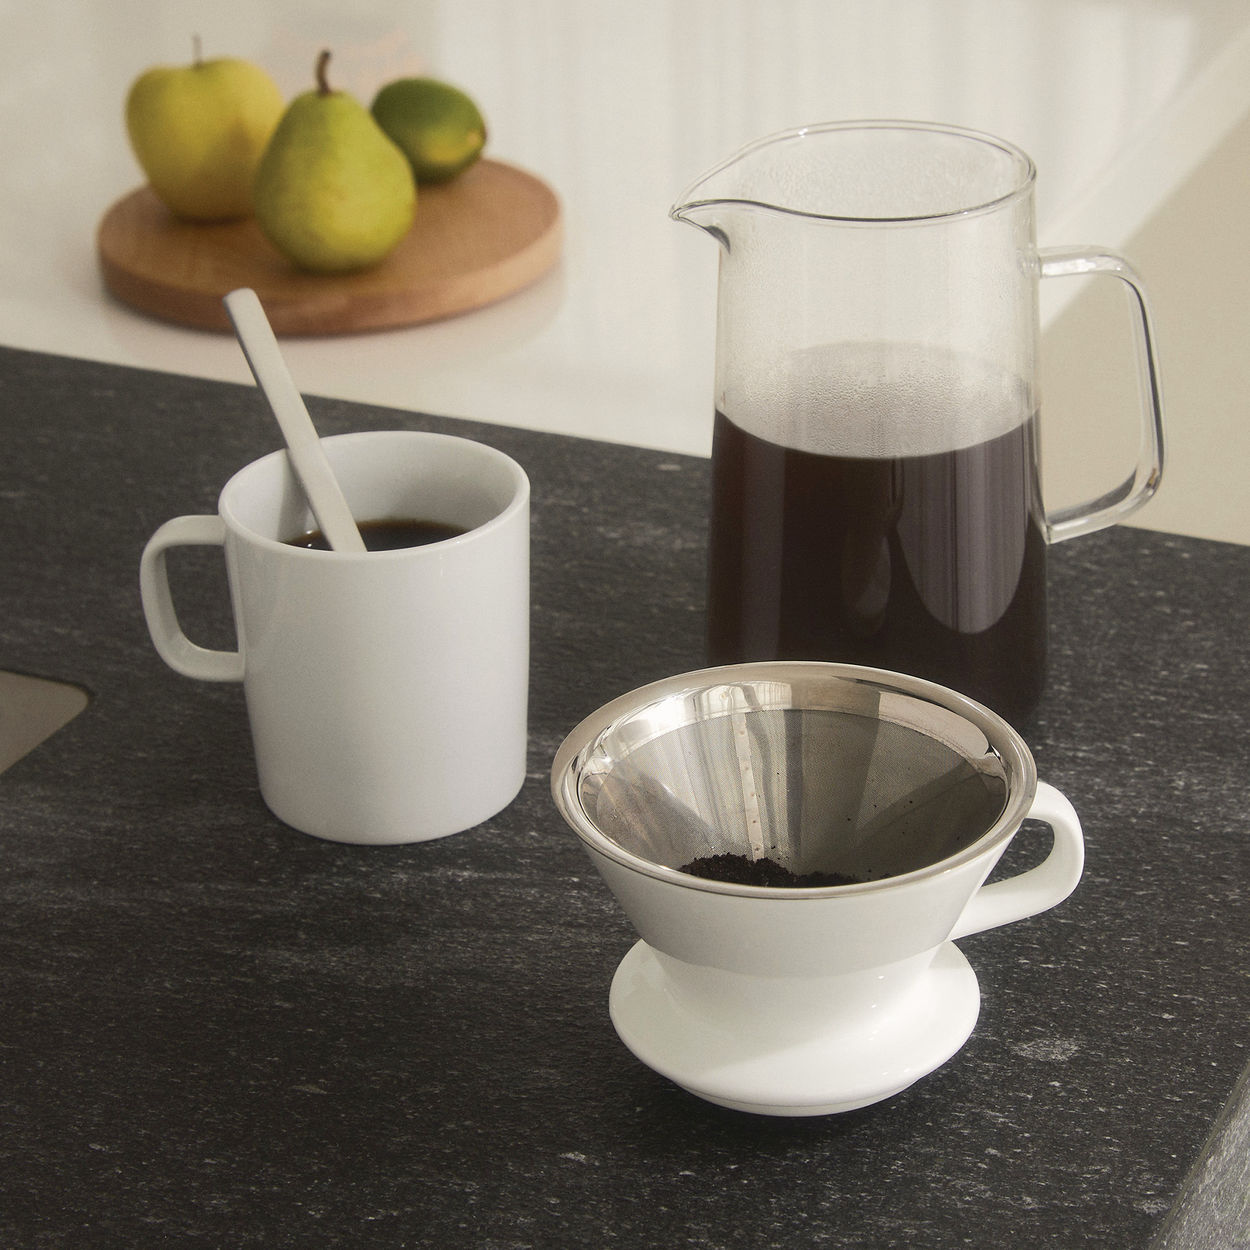 Alessi langsamer Kaffee, Zubehör für Kaffeemühle (Krug + Nettofilter + Filterhalter)